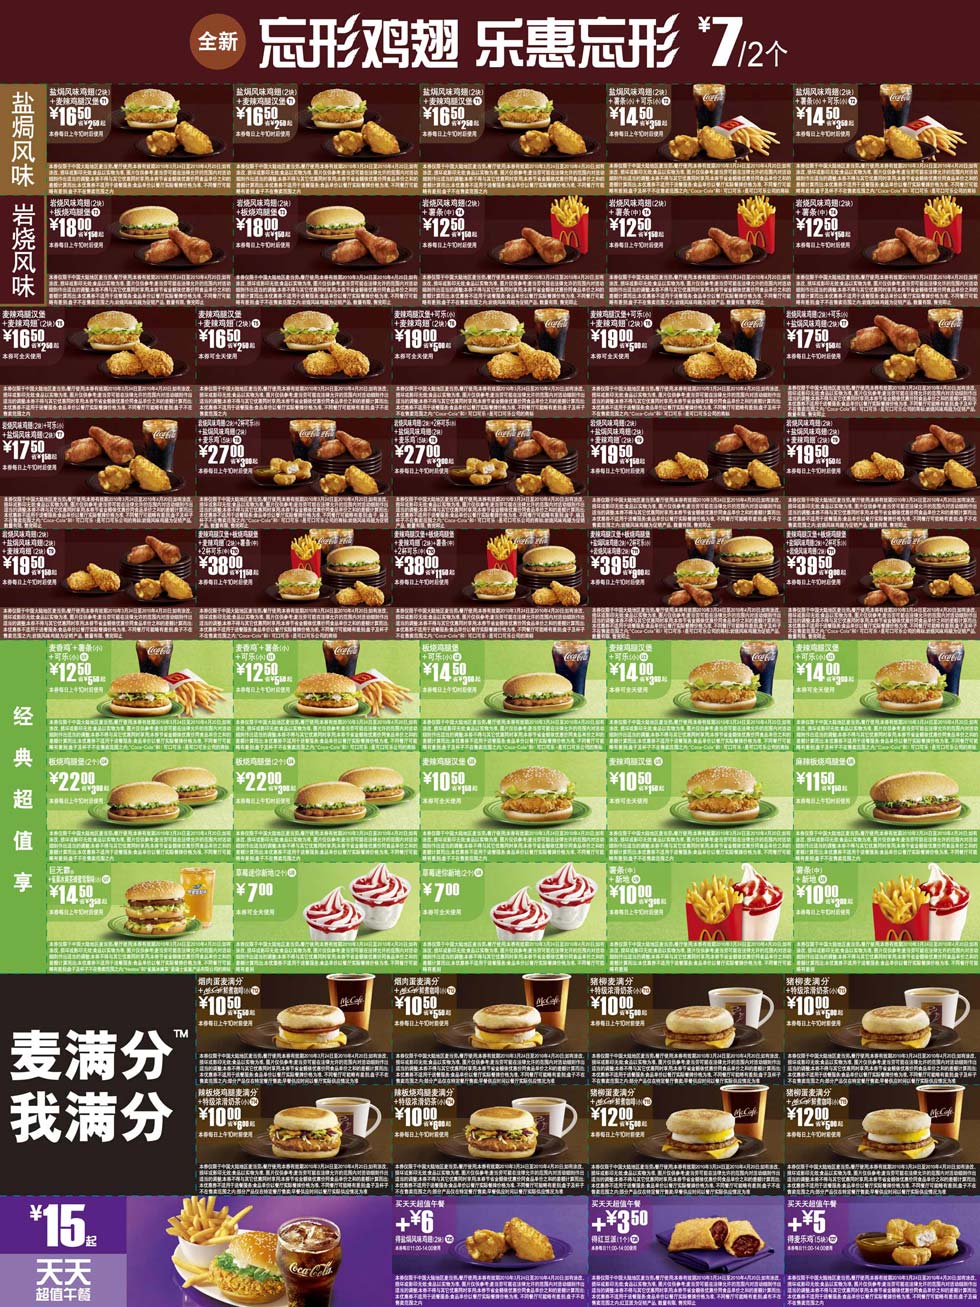 优惠券图片:麦当劳新鸡翅优惠券2010年3月4月整张打印版一 有效期2010年03月24日-2010年04月20日